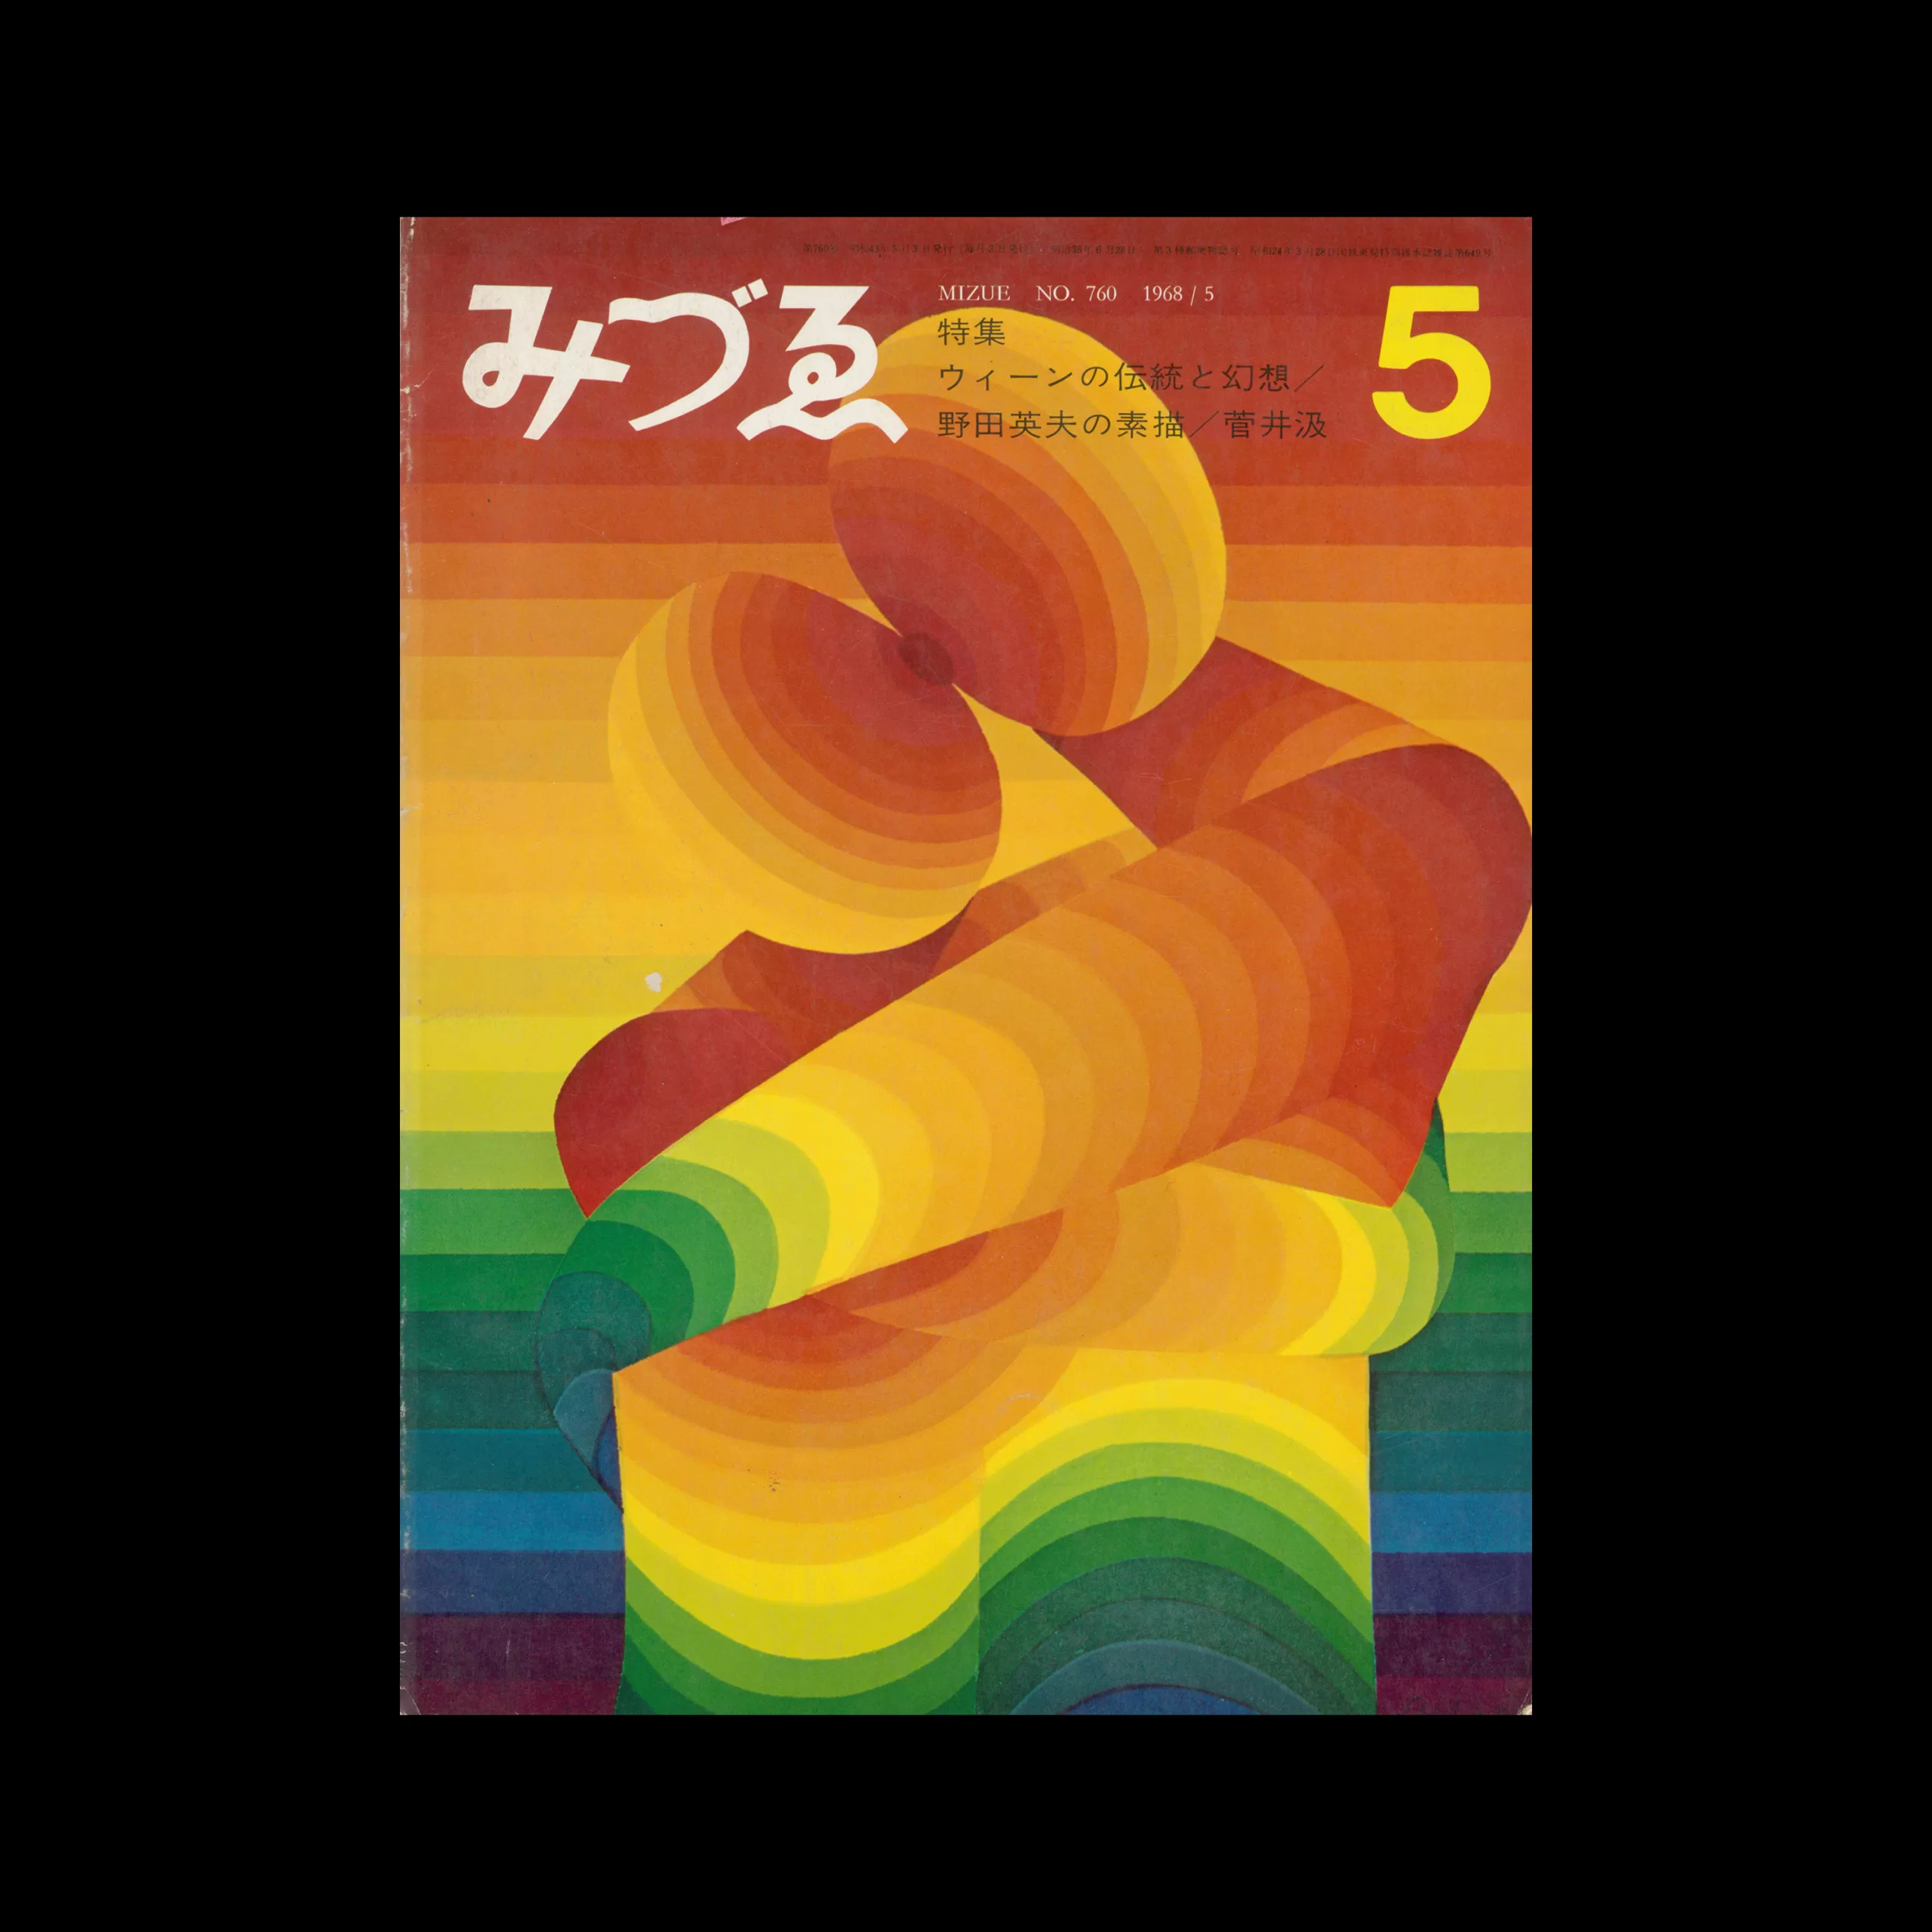 みづゑ Mizue 760 1968. Cover design by Kumi Sugai 1 scaled